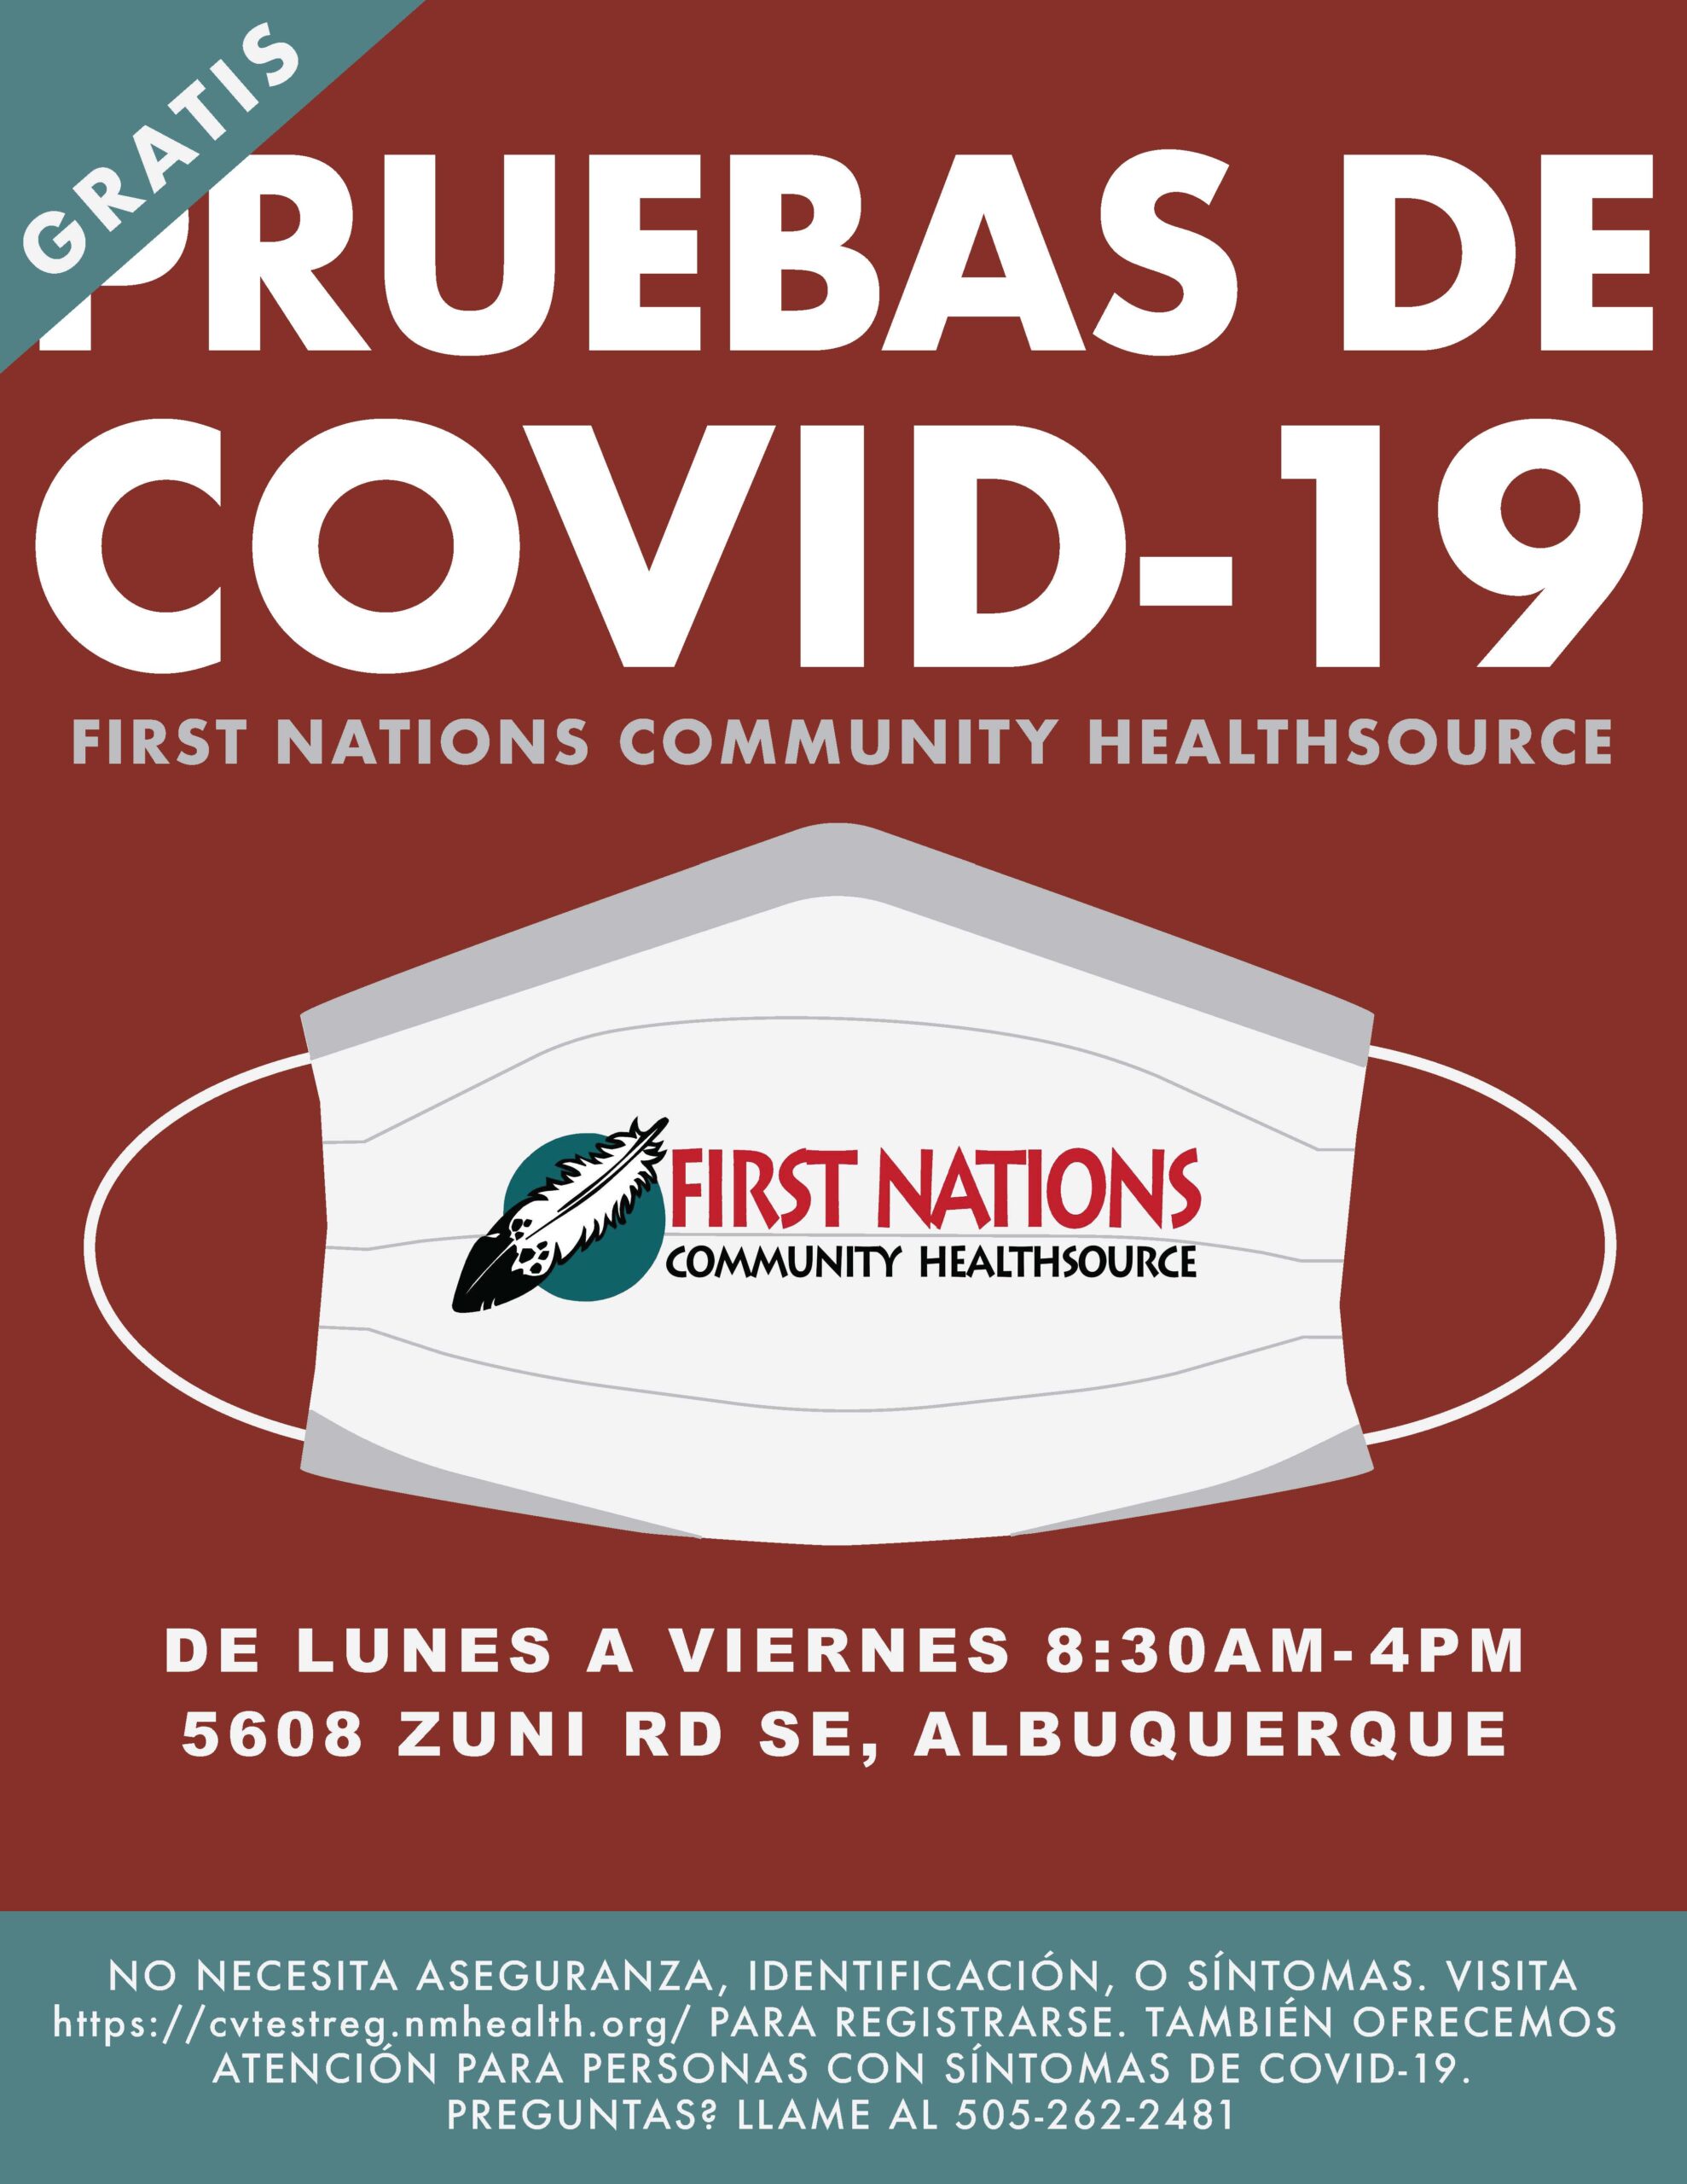 Gratis Pruebas de COVID-19 First Nations Community HealthSource Cada Martes y Jueves de 5-6pm